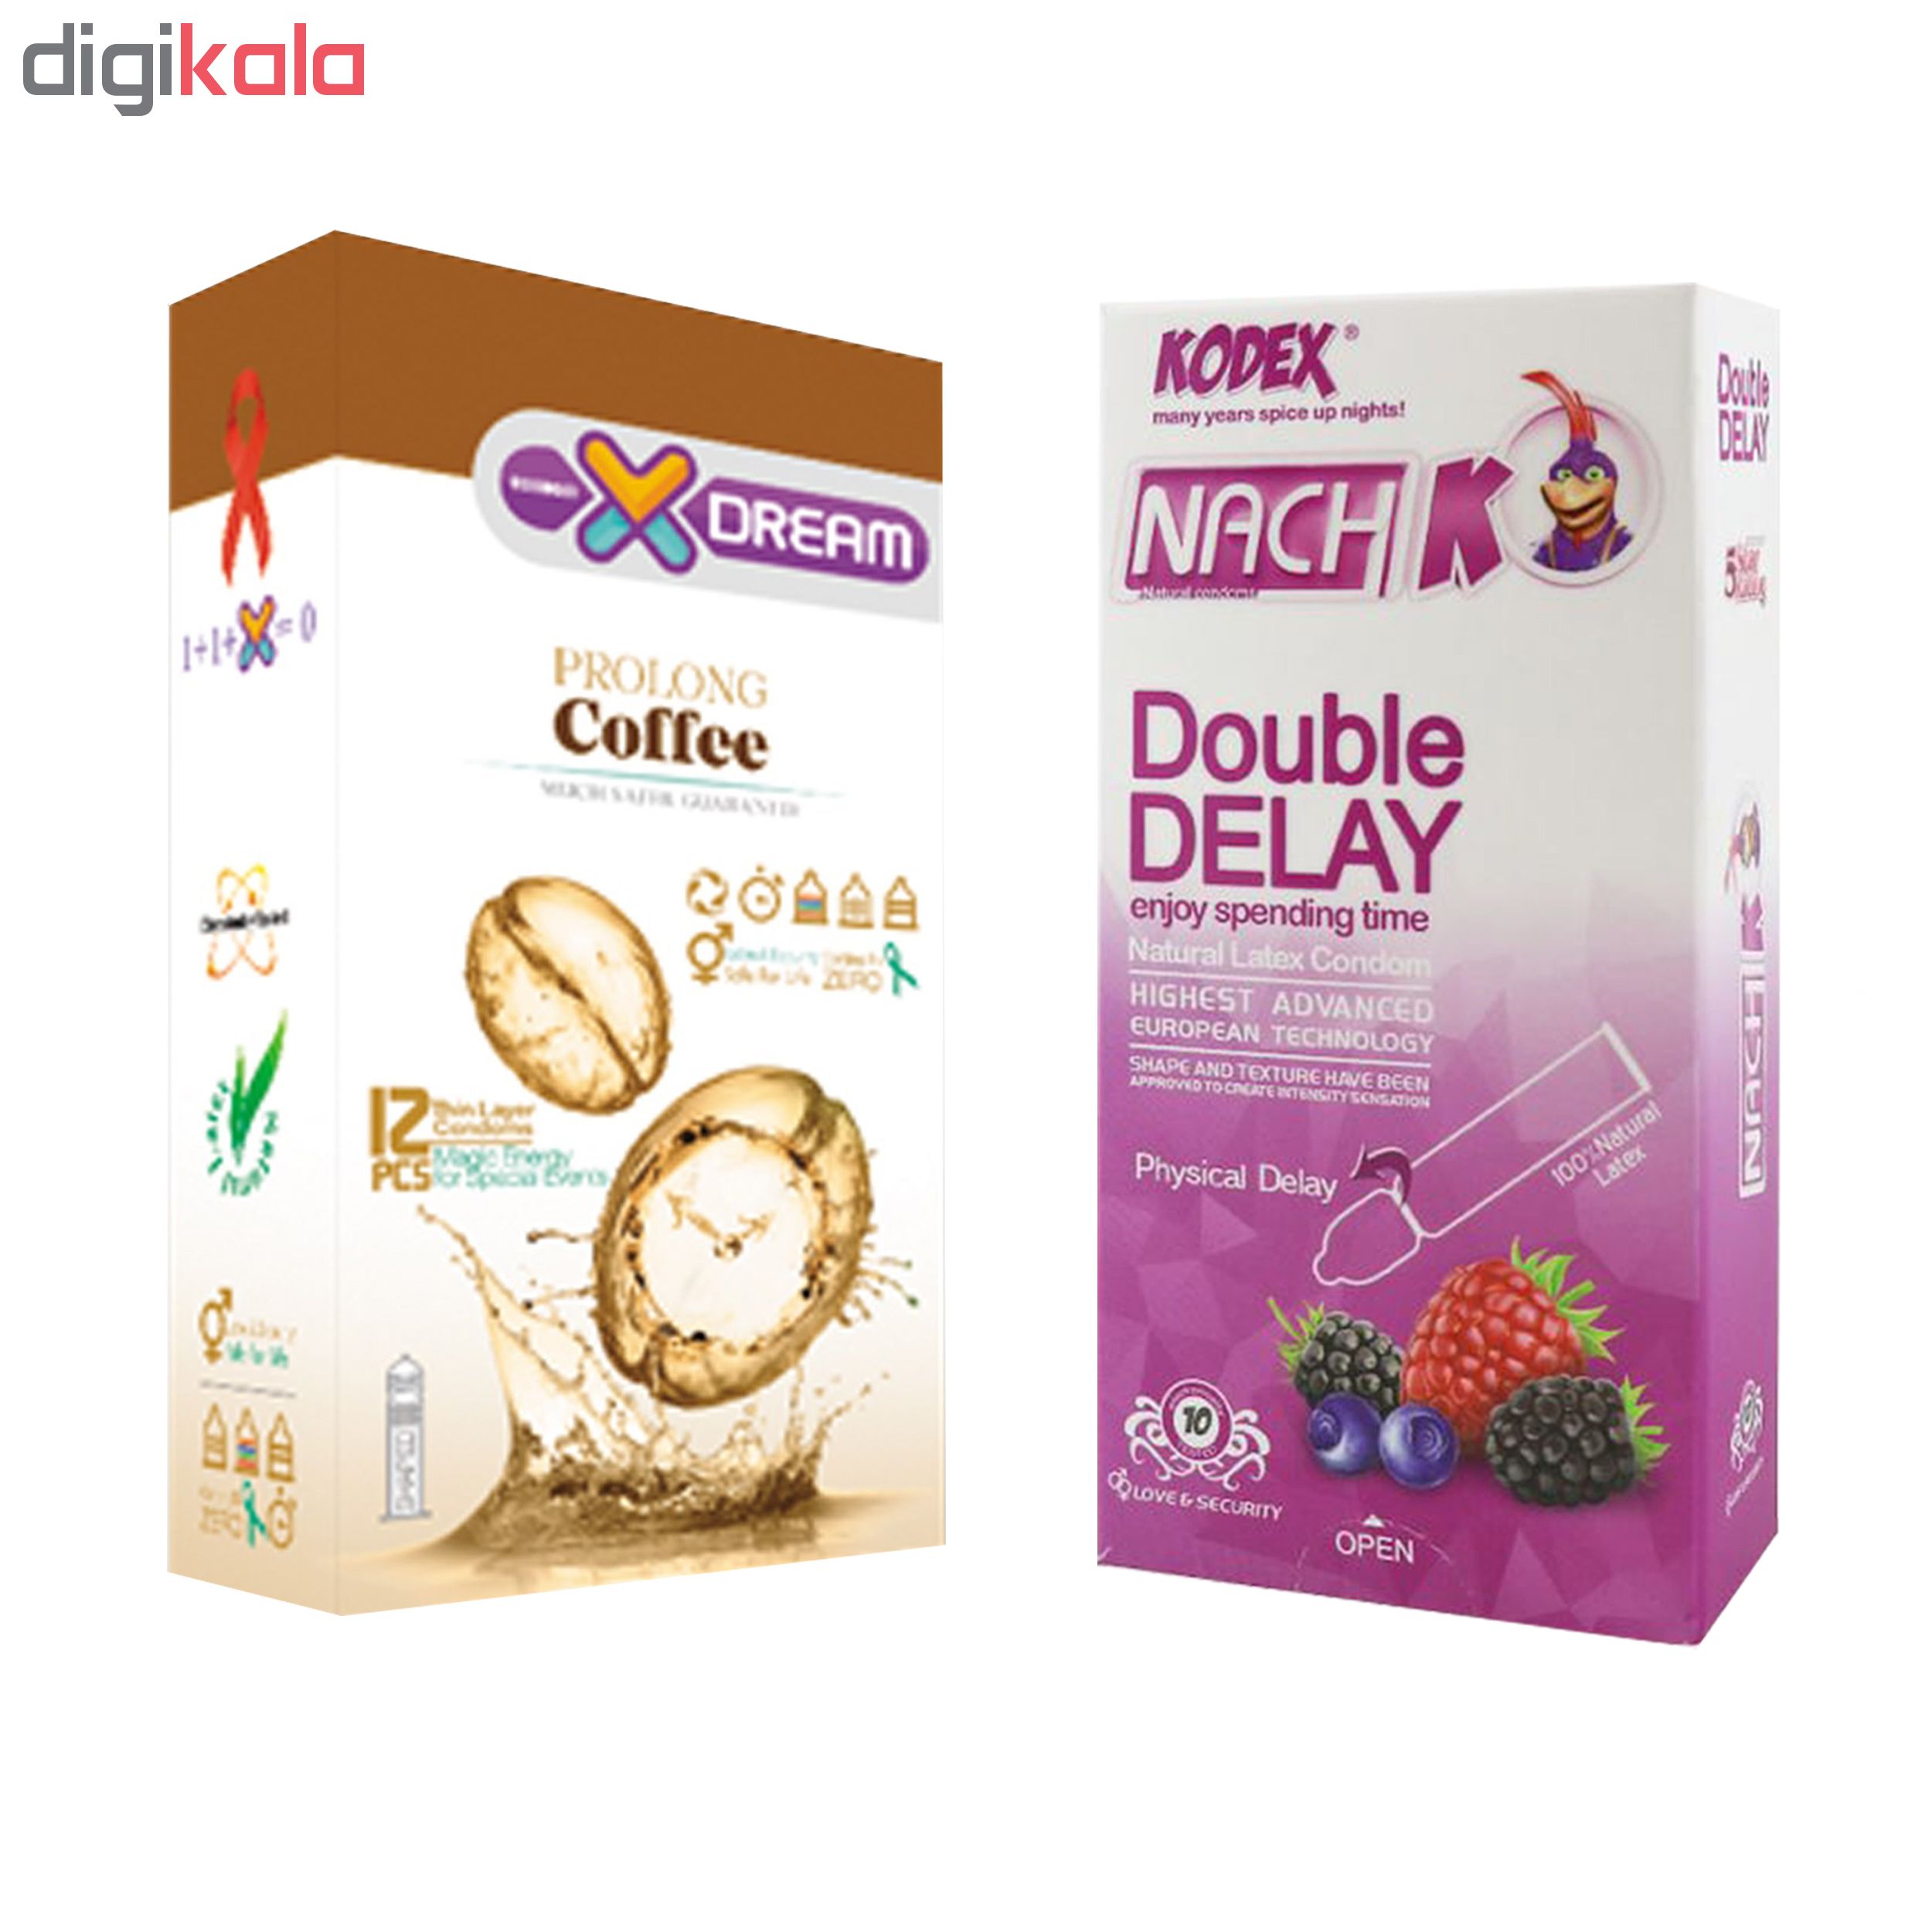 کاندوم ایکس دریم مدل Coffee بسته 12 عددی به همراه کاندوم تاخیری کدکس مدل Double Delay بسته 10 عددی -  - 2